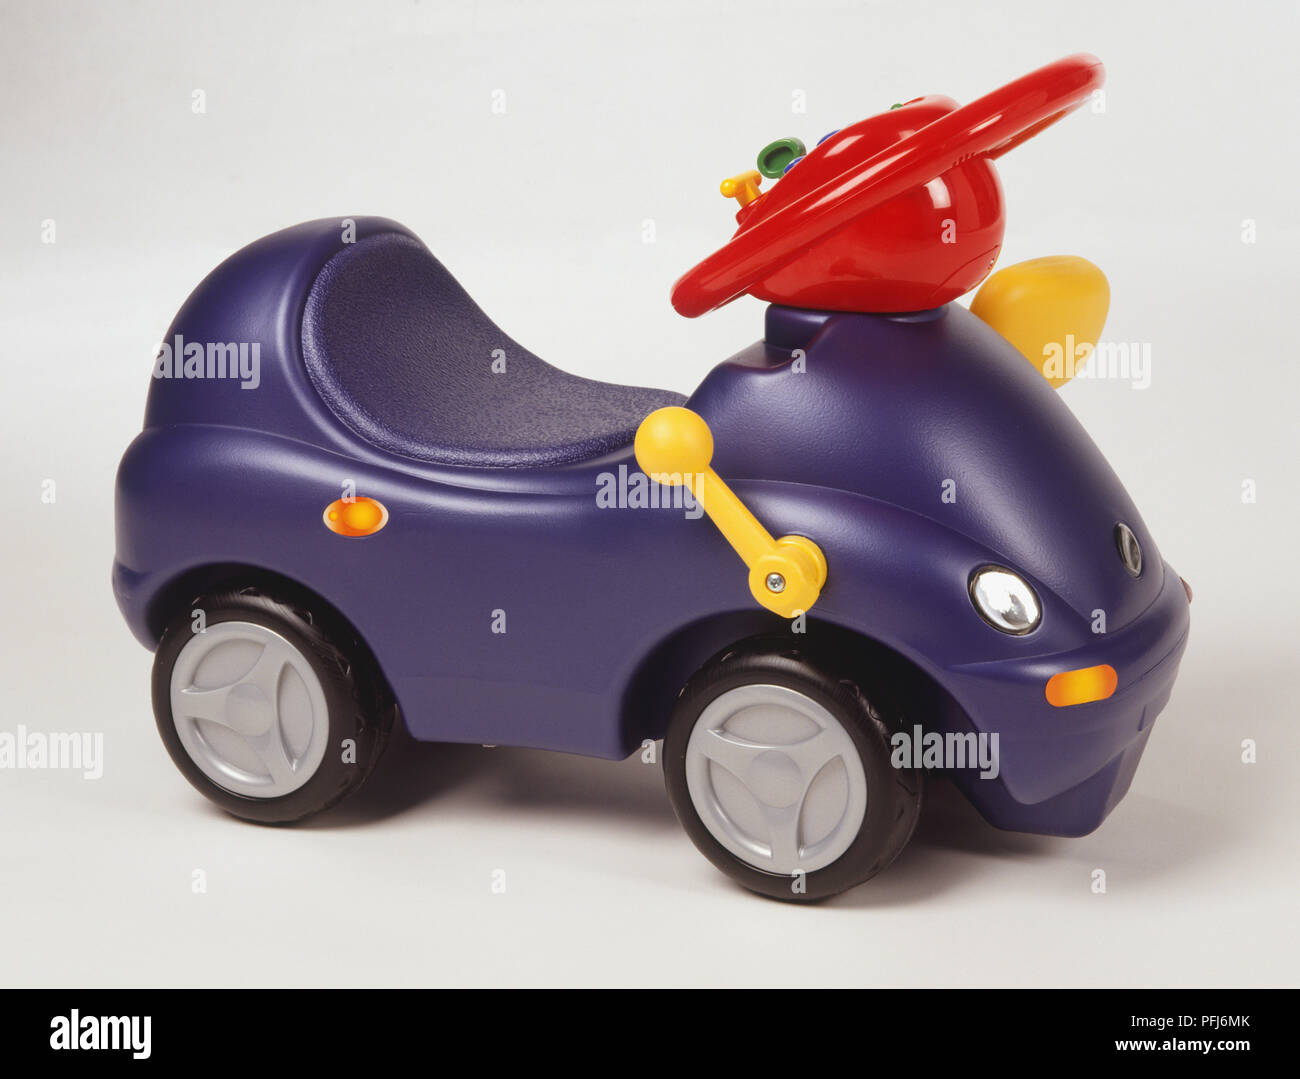 Voiture jouet violet avec un volant rouge, vue de côté Photo Stock - Alamy